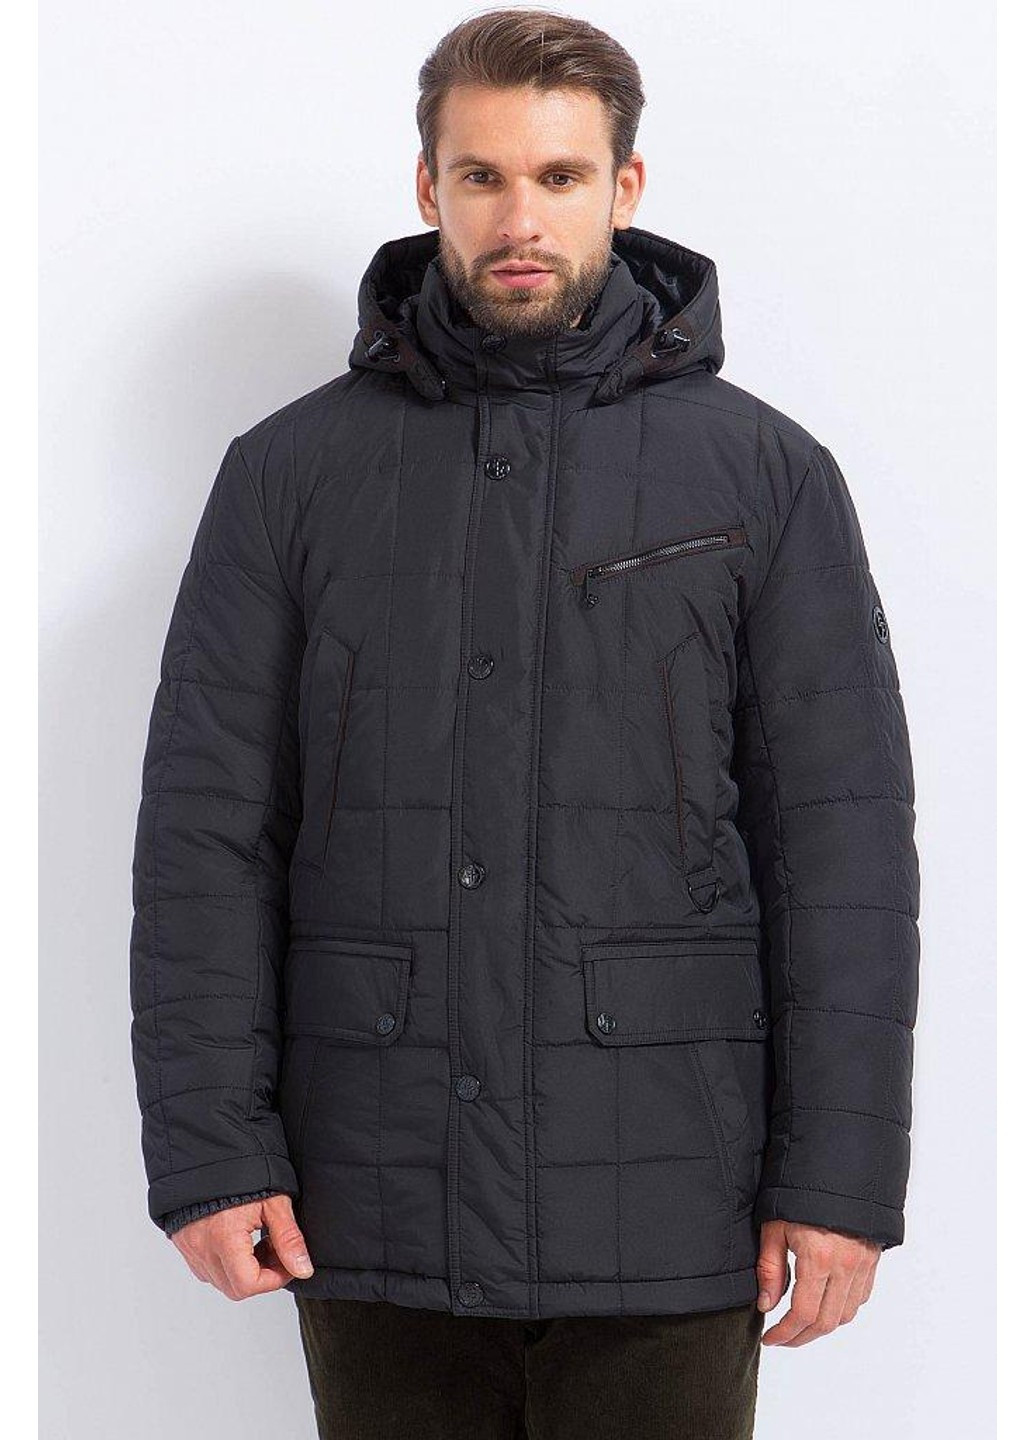 Чорна зимня зимова куртка a17-21017-200 Finn Flare